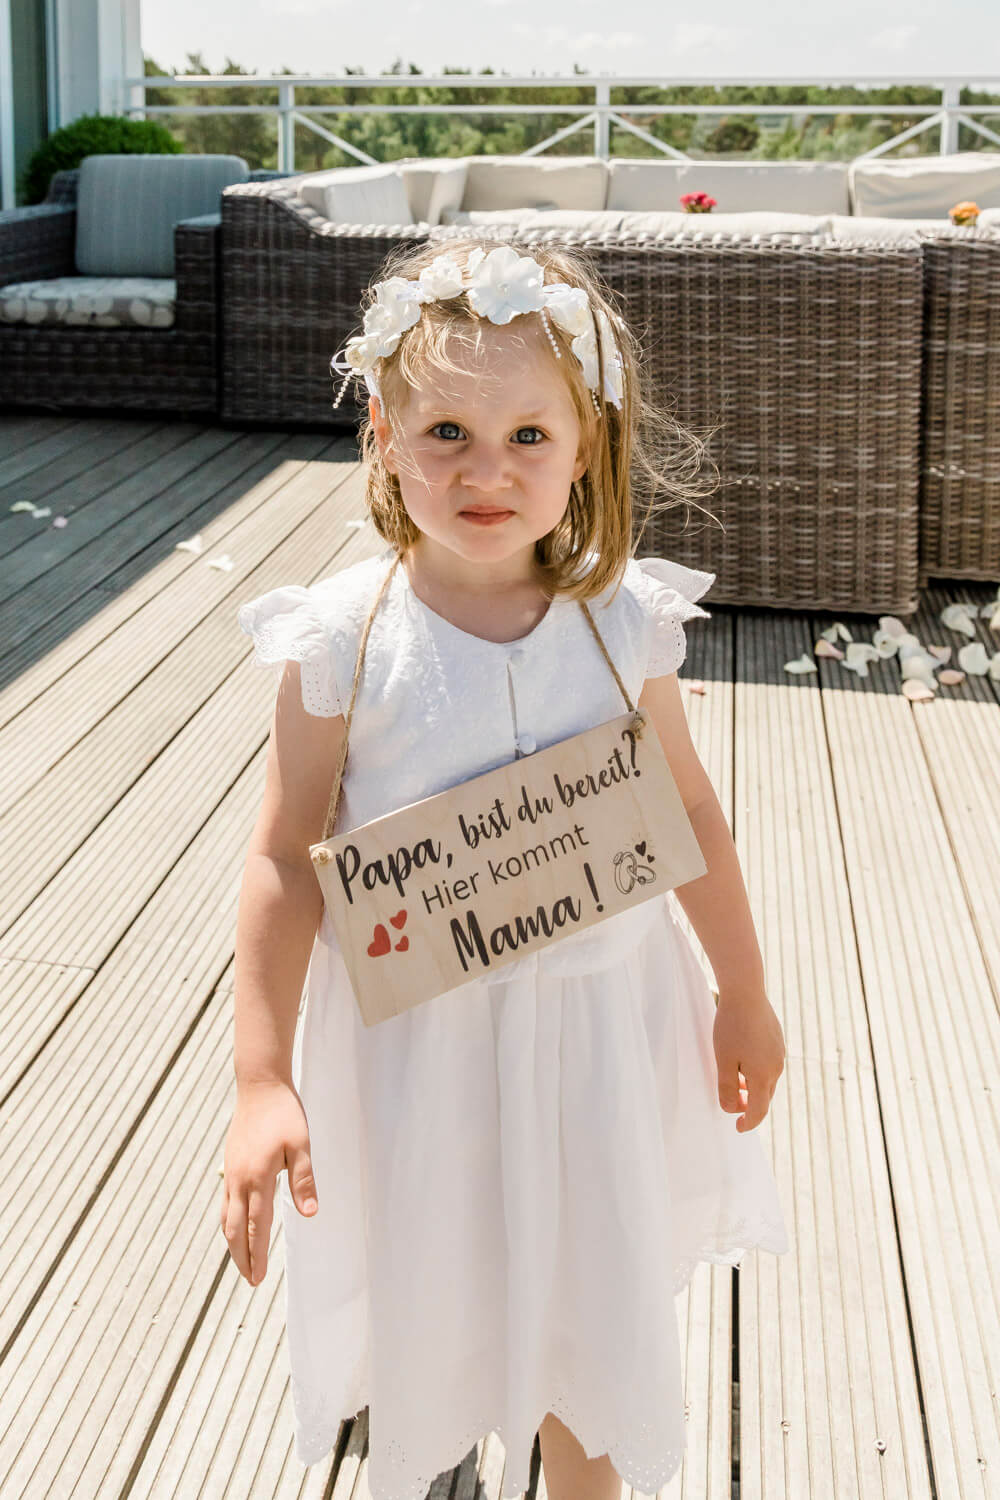 Die Tochter des Hochzeitspaares trägt das Schild "Papa, bist du bereit? Hier kommt Mama" zur Trauung.